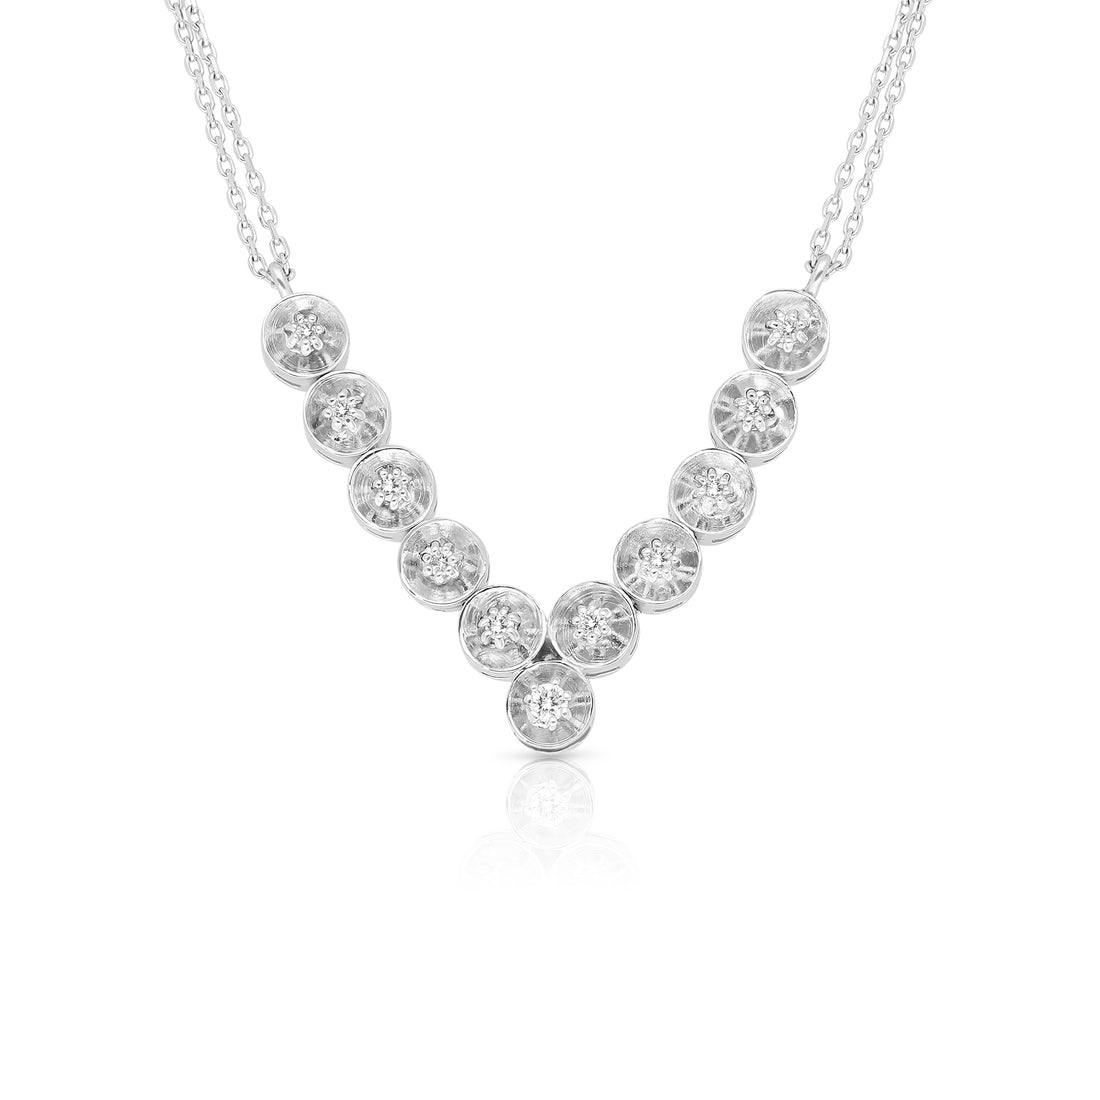 Diamond V Shape Necklace - .15 Carat